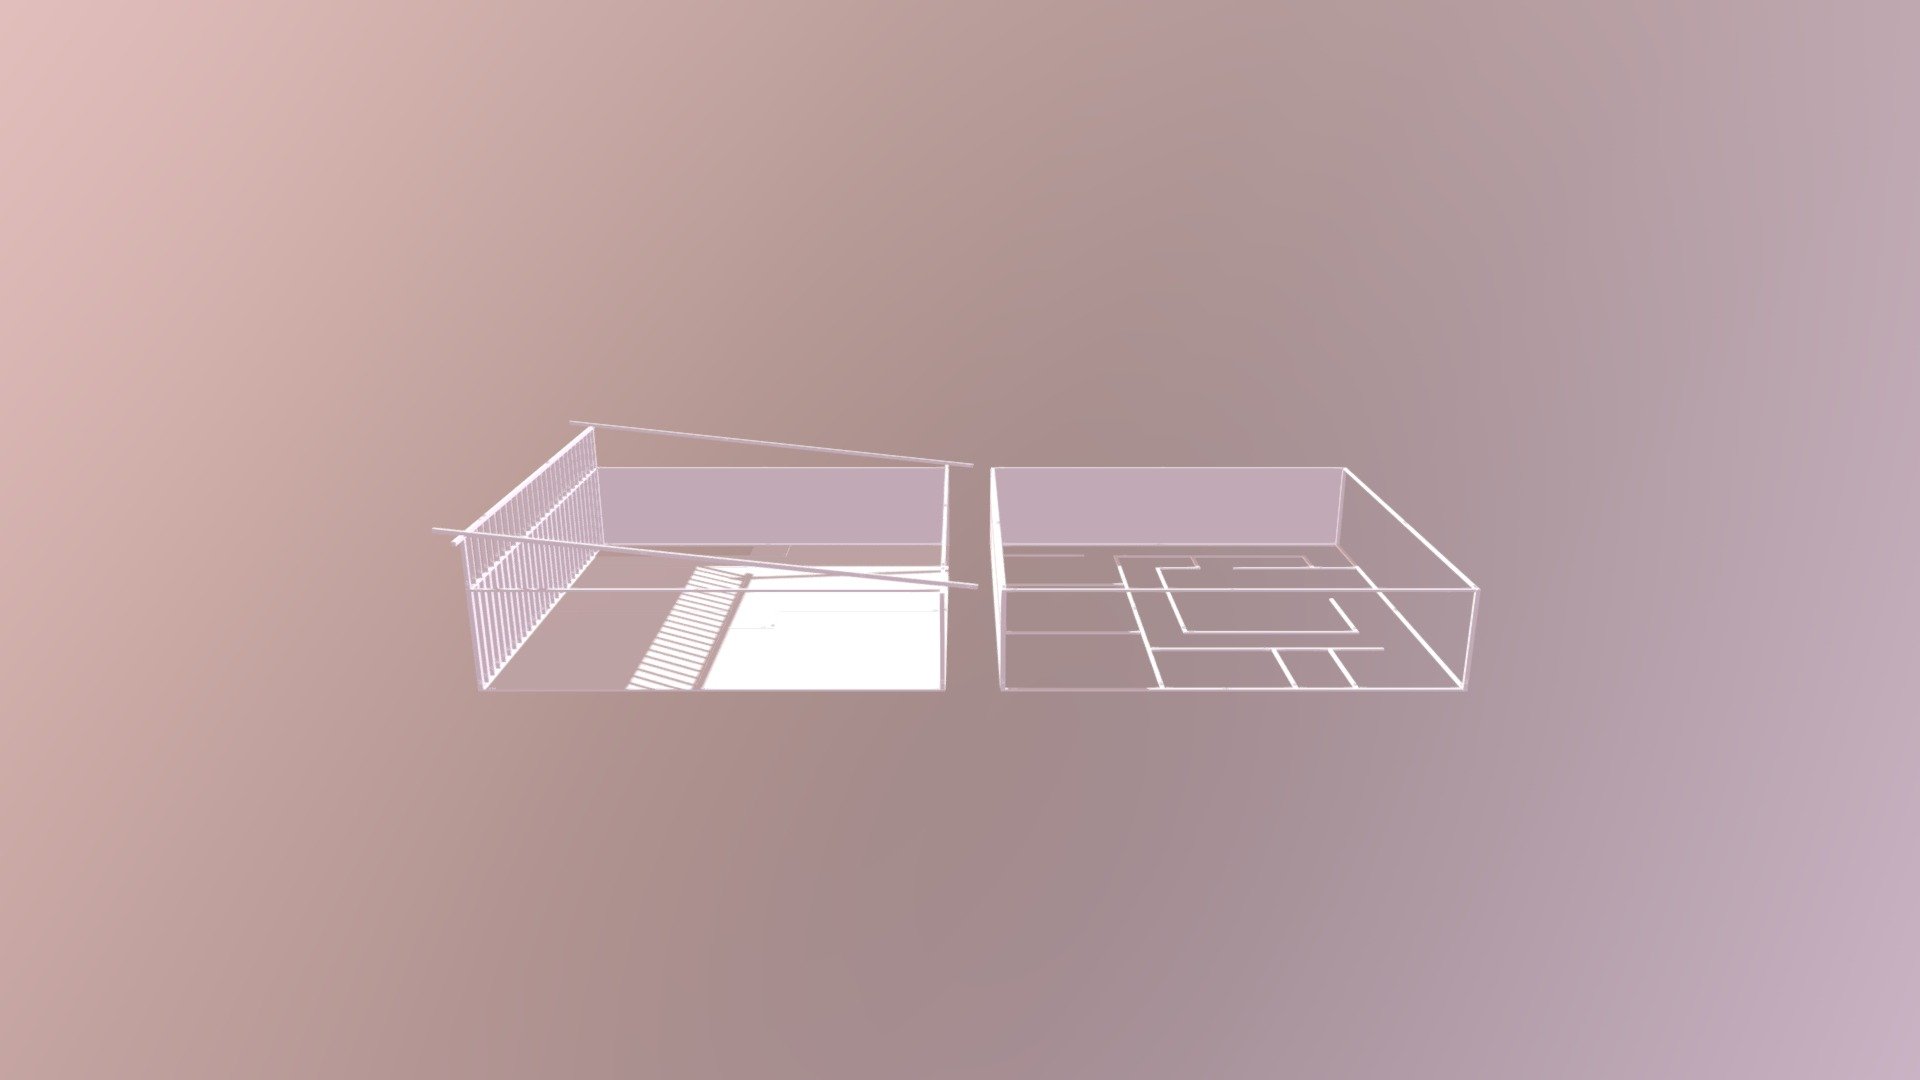 2 Story Floor Plan by 3DWERKZ